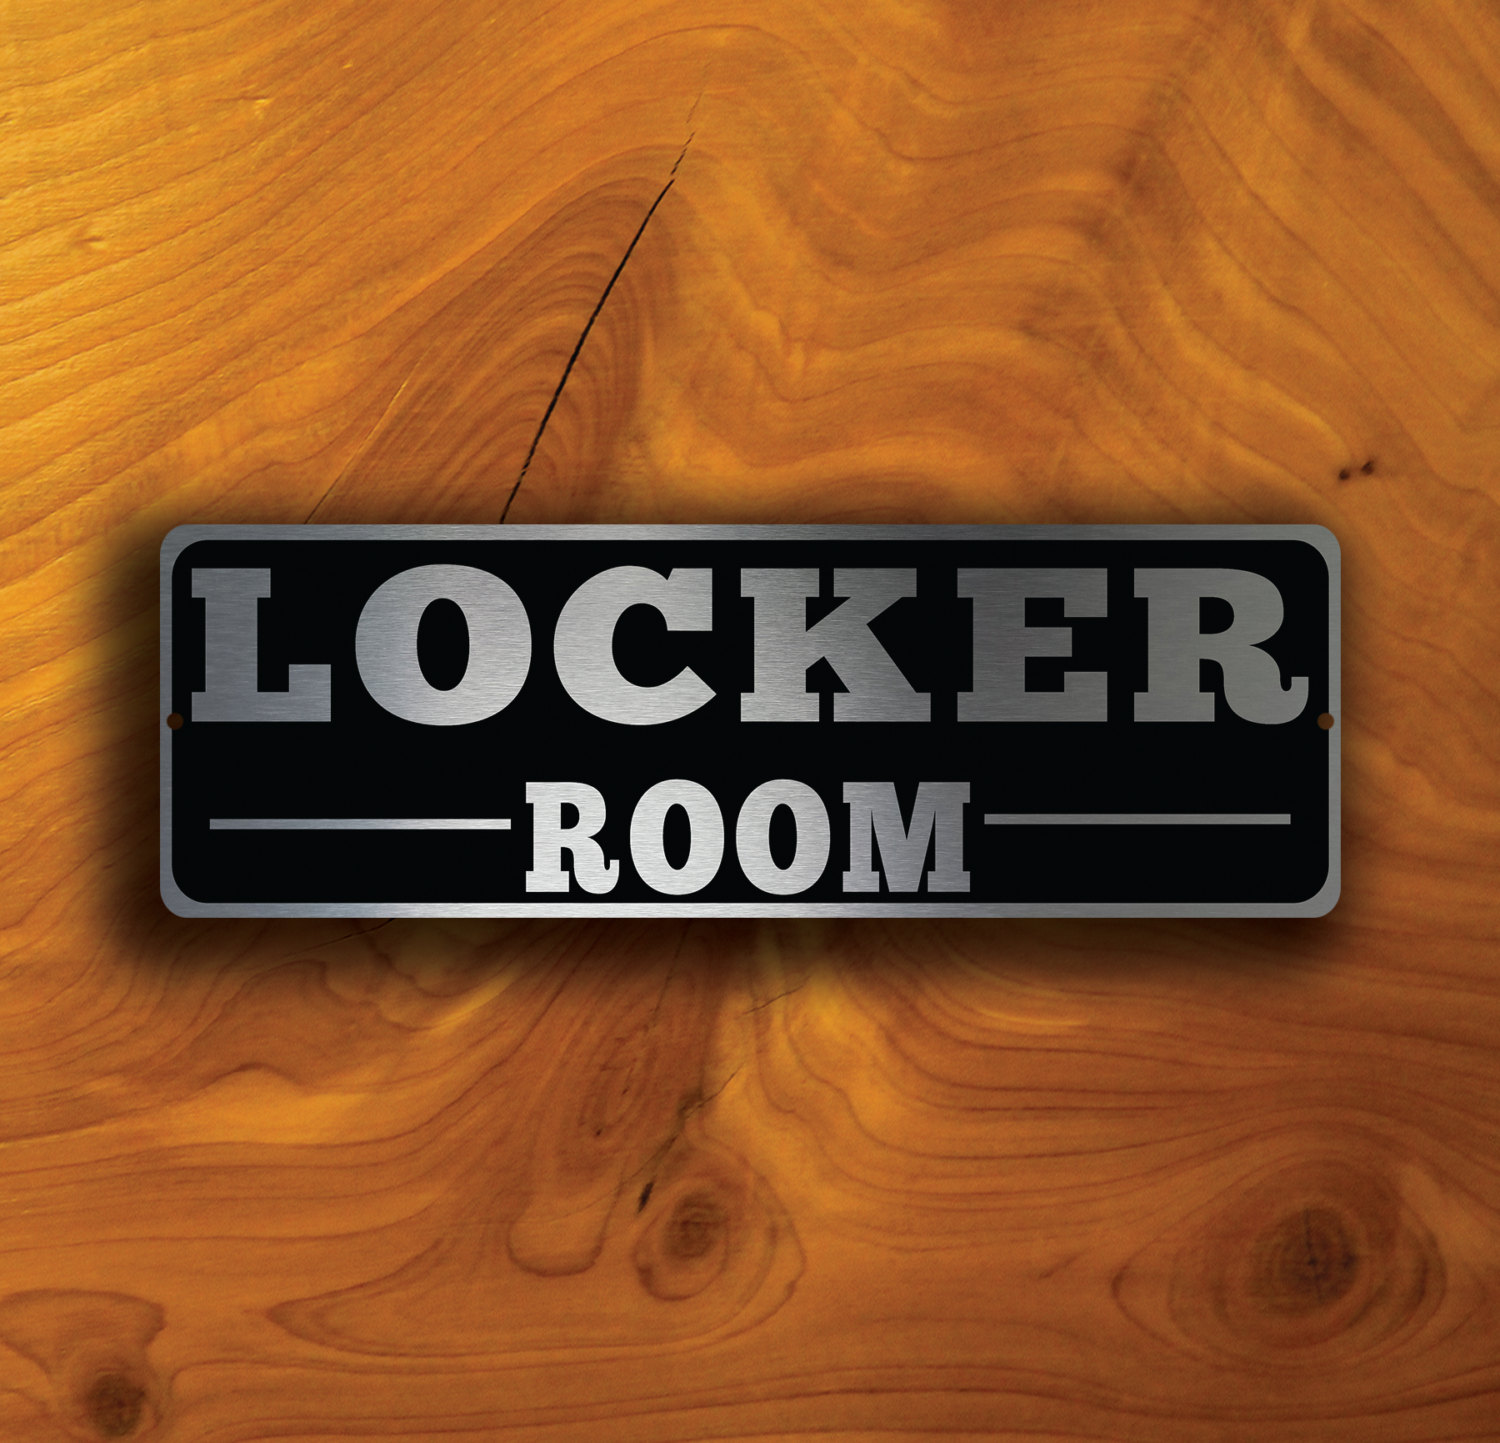 locker room door